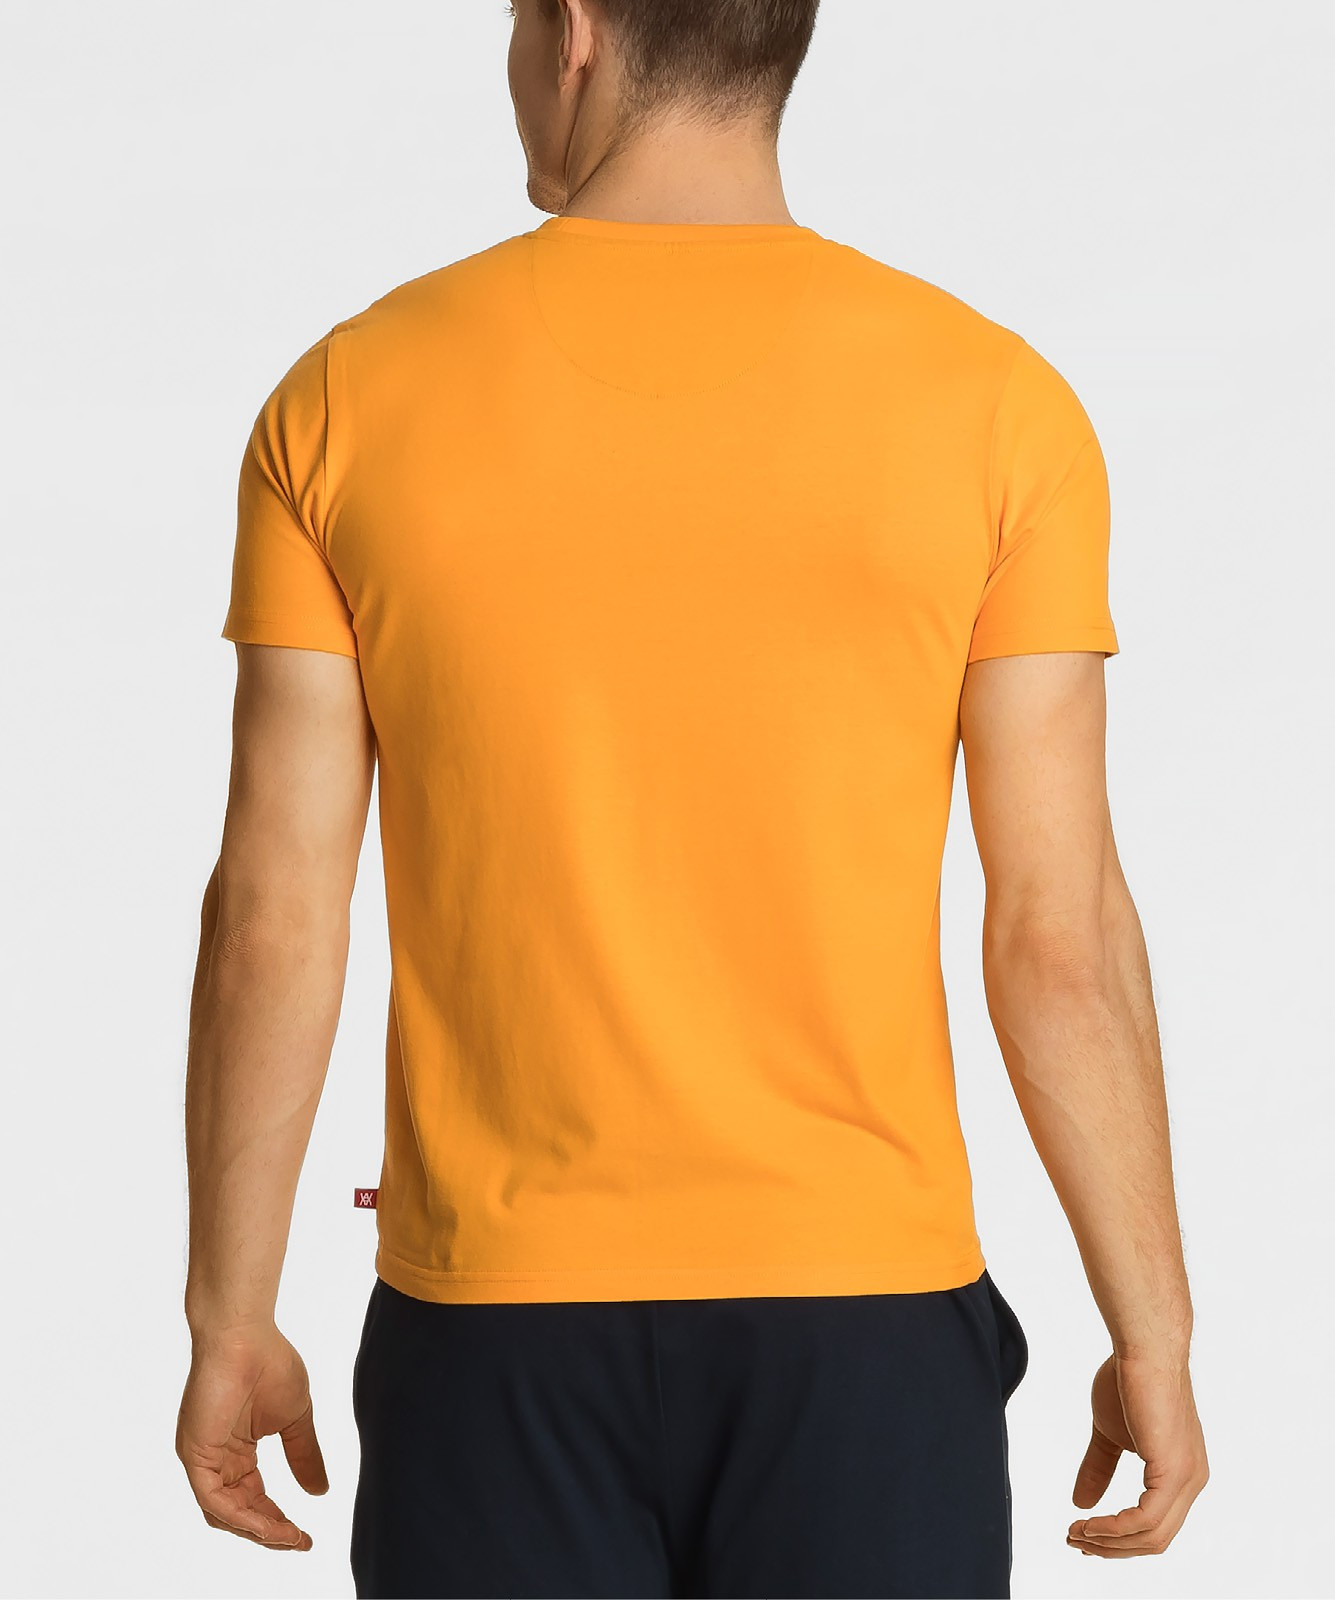 Pánské tričko Atlantic NMT-034 S-2XL jasně oranžová M